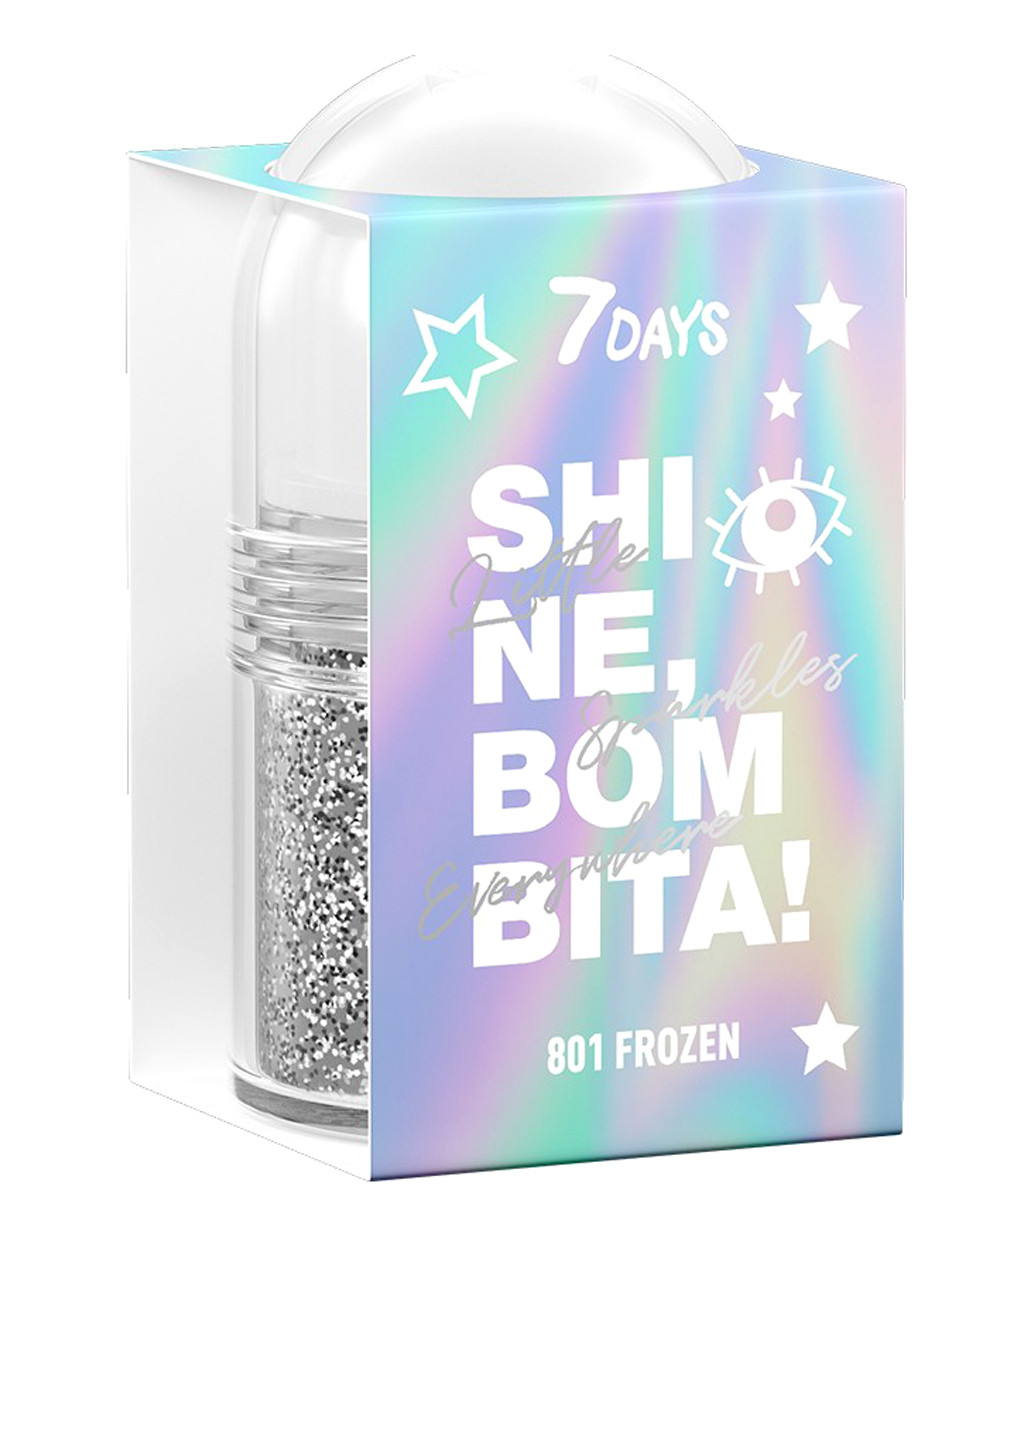 Серебряный гель для тела SHINE, BOMBITA! с шиммерами и блестками 801 Frozen, 20 мл 7 days (197273647)